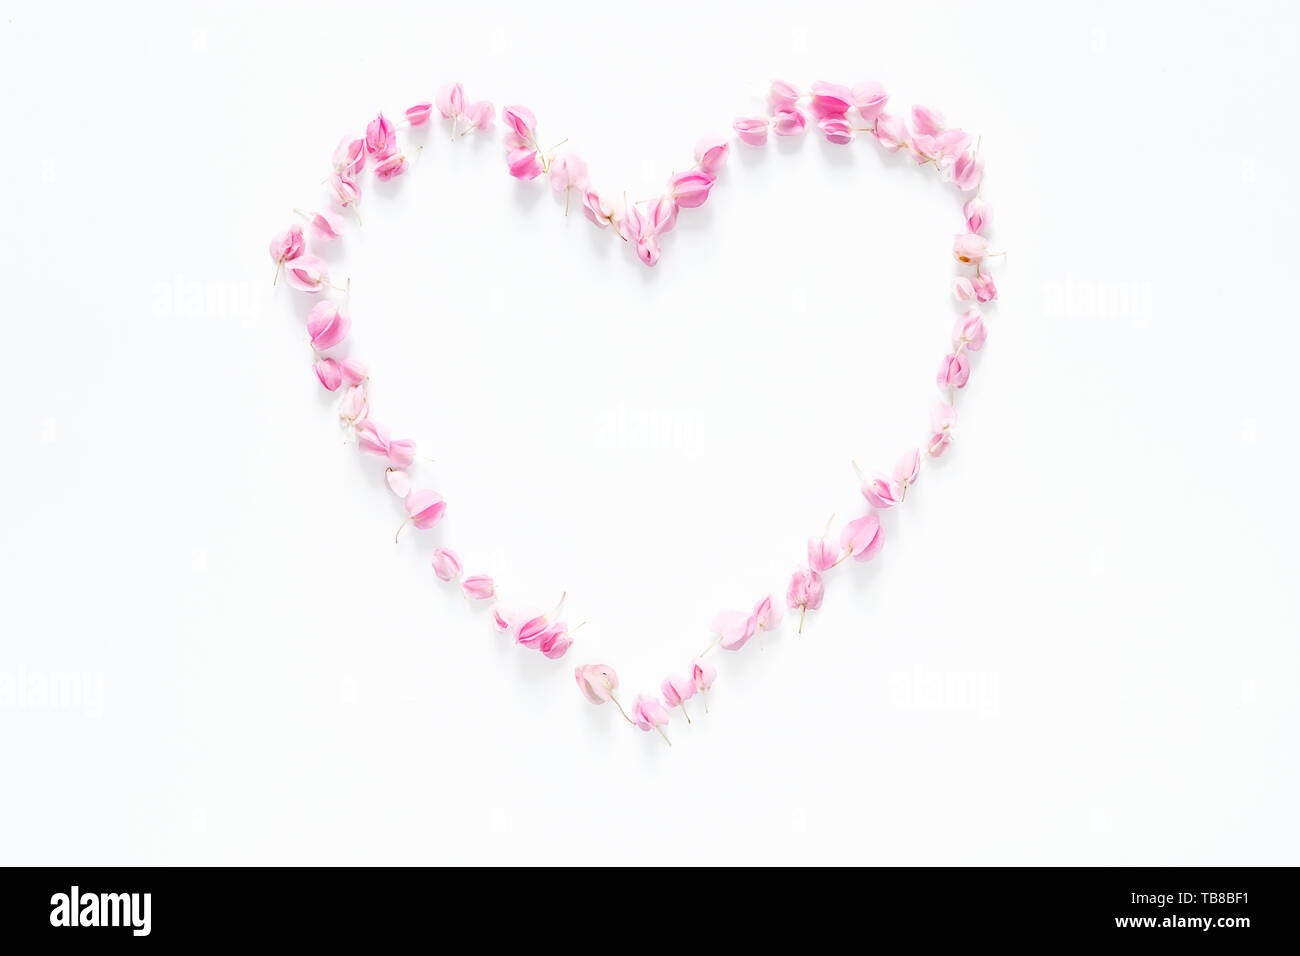 Piatto di laici cuore floreale realizzato da fiori di colore rosa isolato su sfondo bianco, vista dall'alto. fiore composizione creativa Foto Stock